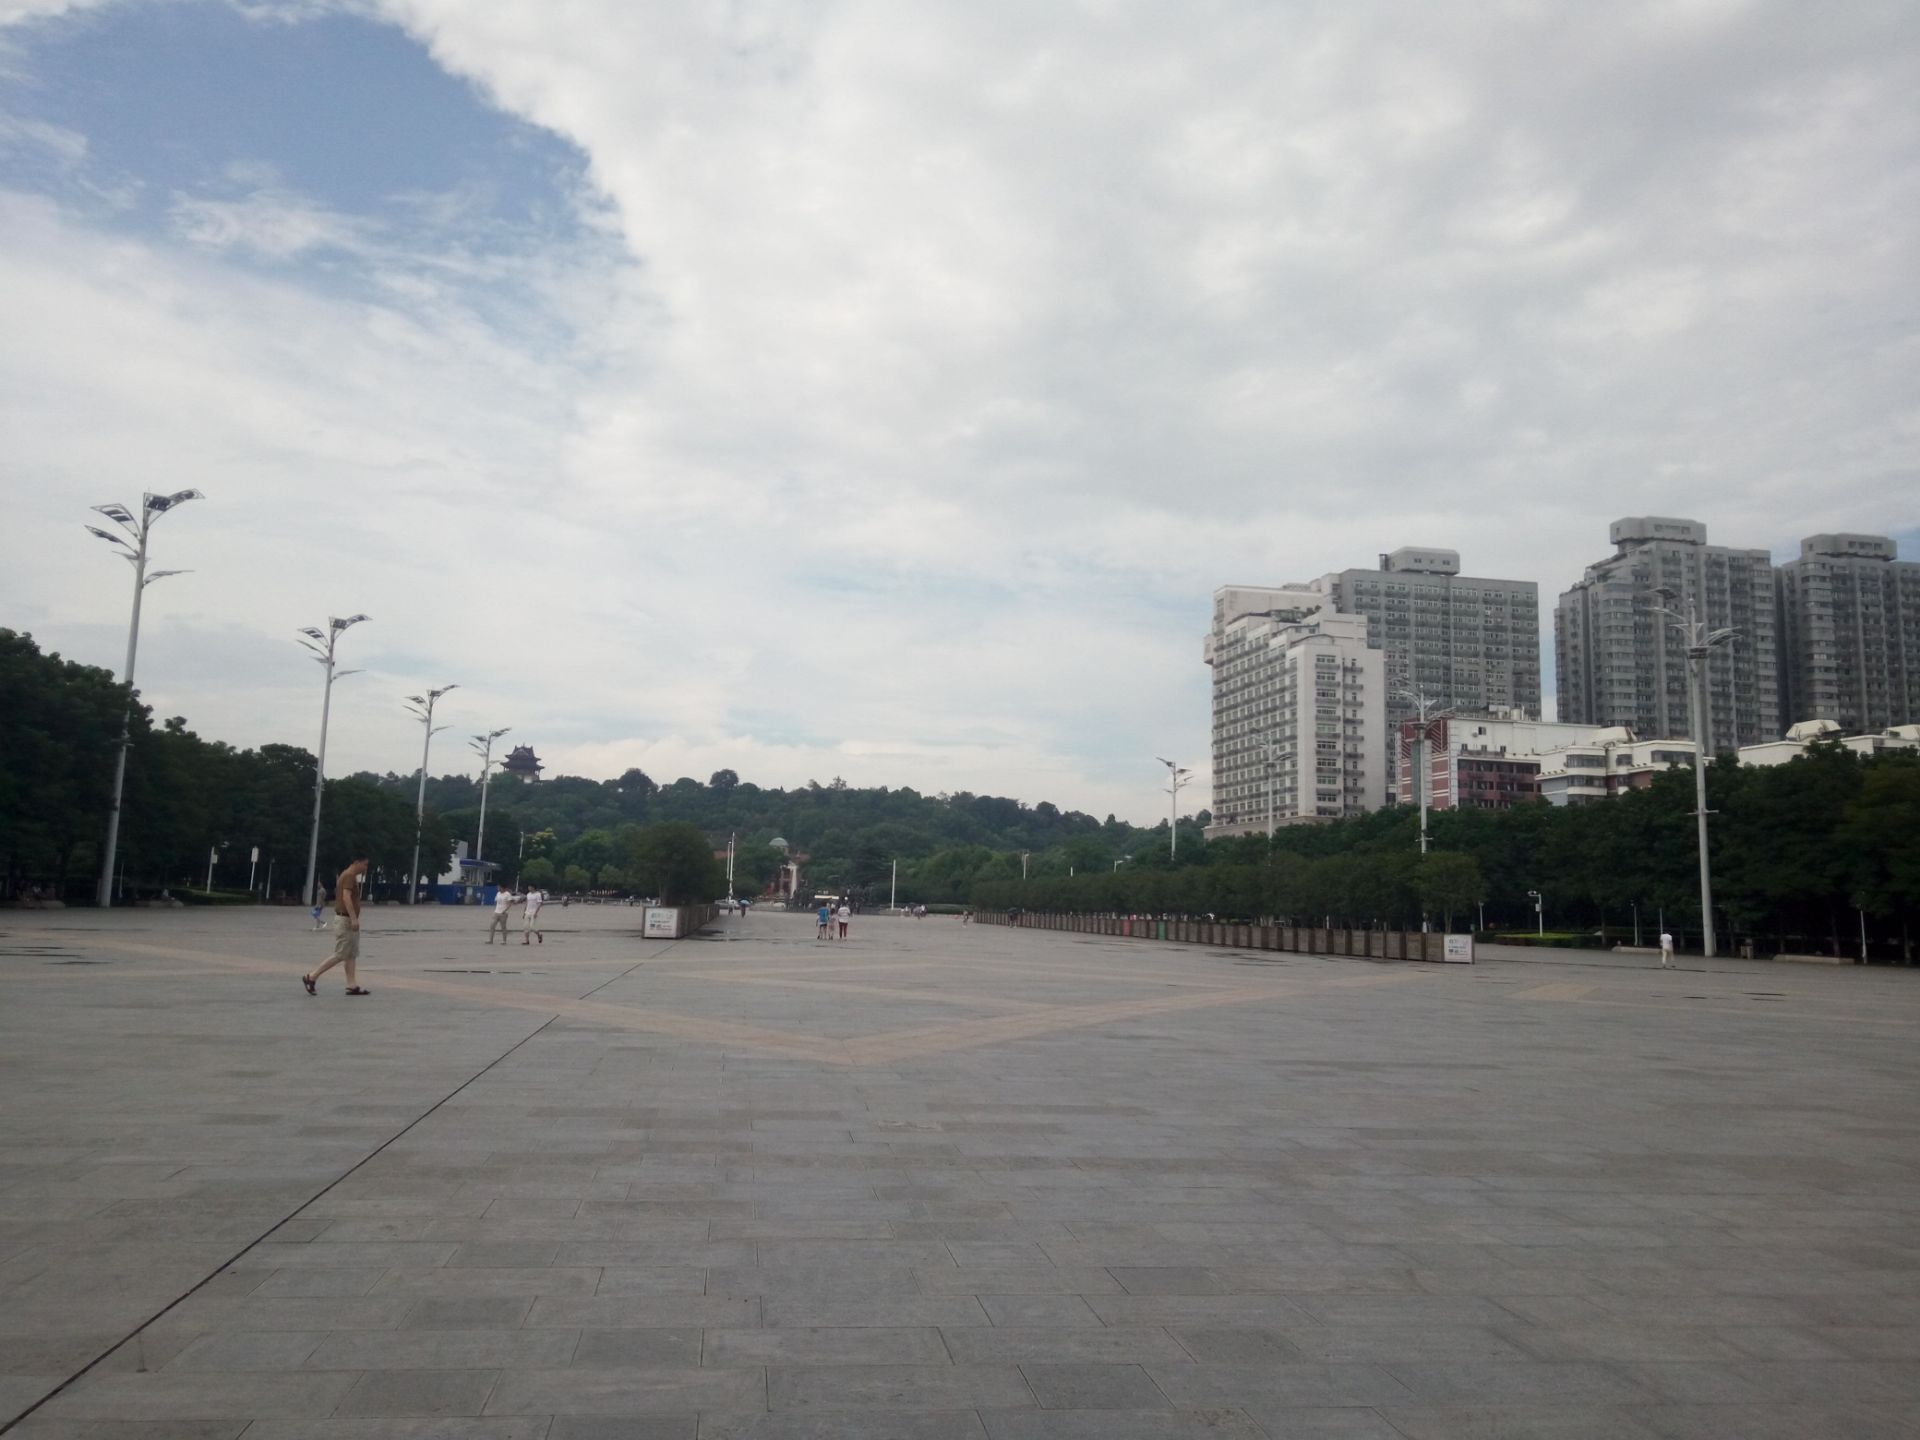 【携程攻略】武汉首义广场景点,这里树很多，听说是全国种树最多的广场，从地铁站出来，一出来就看到…